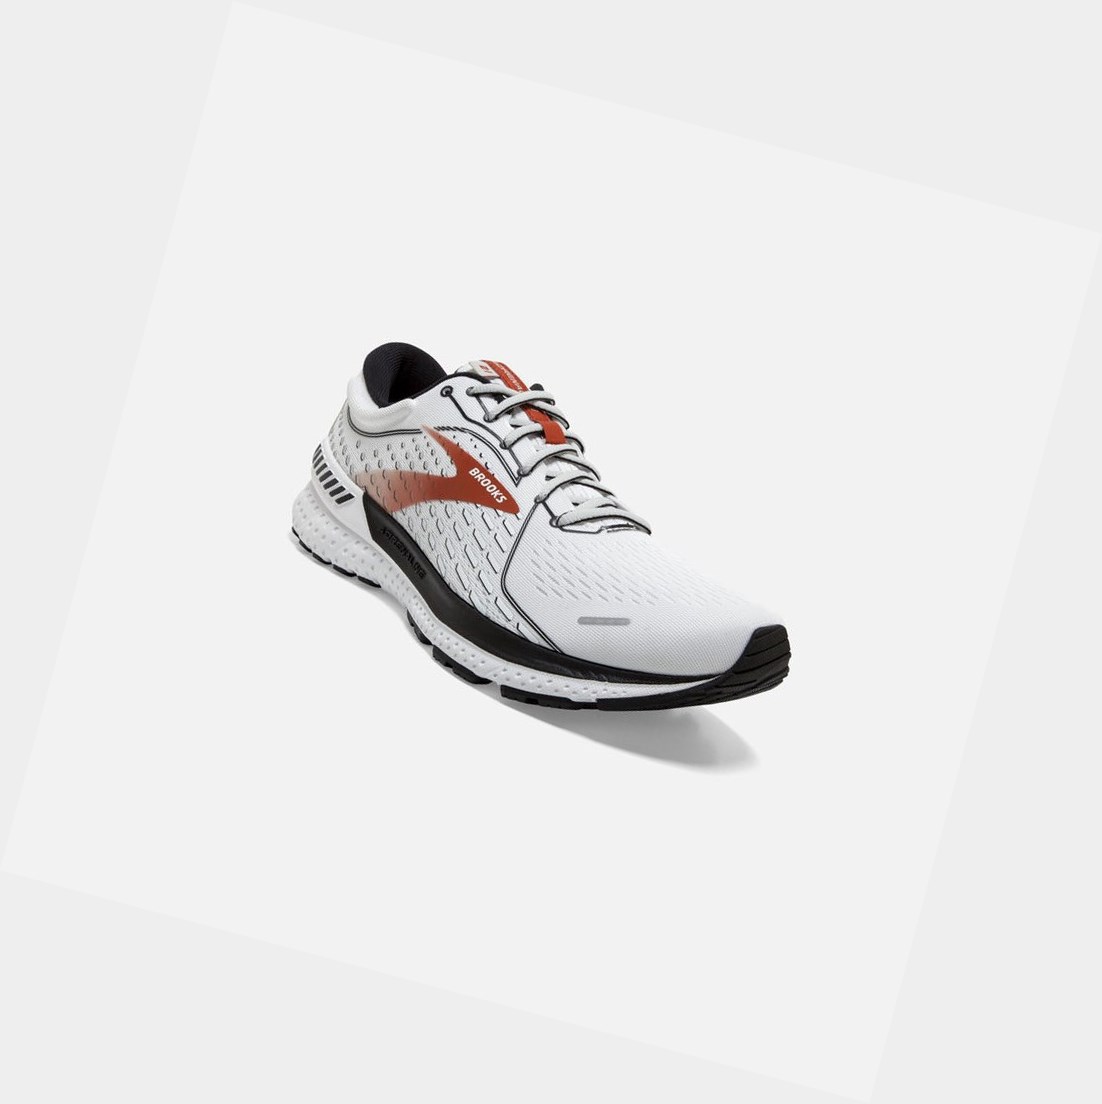 Brooks Adrenaline GTS 21 Men's Walking Shoes White / Black / Orange | GQBH-86473